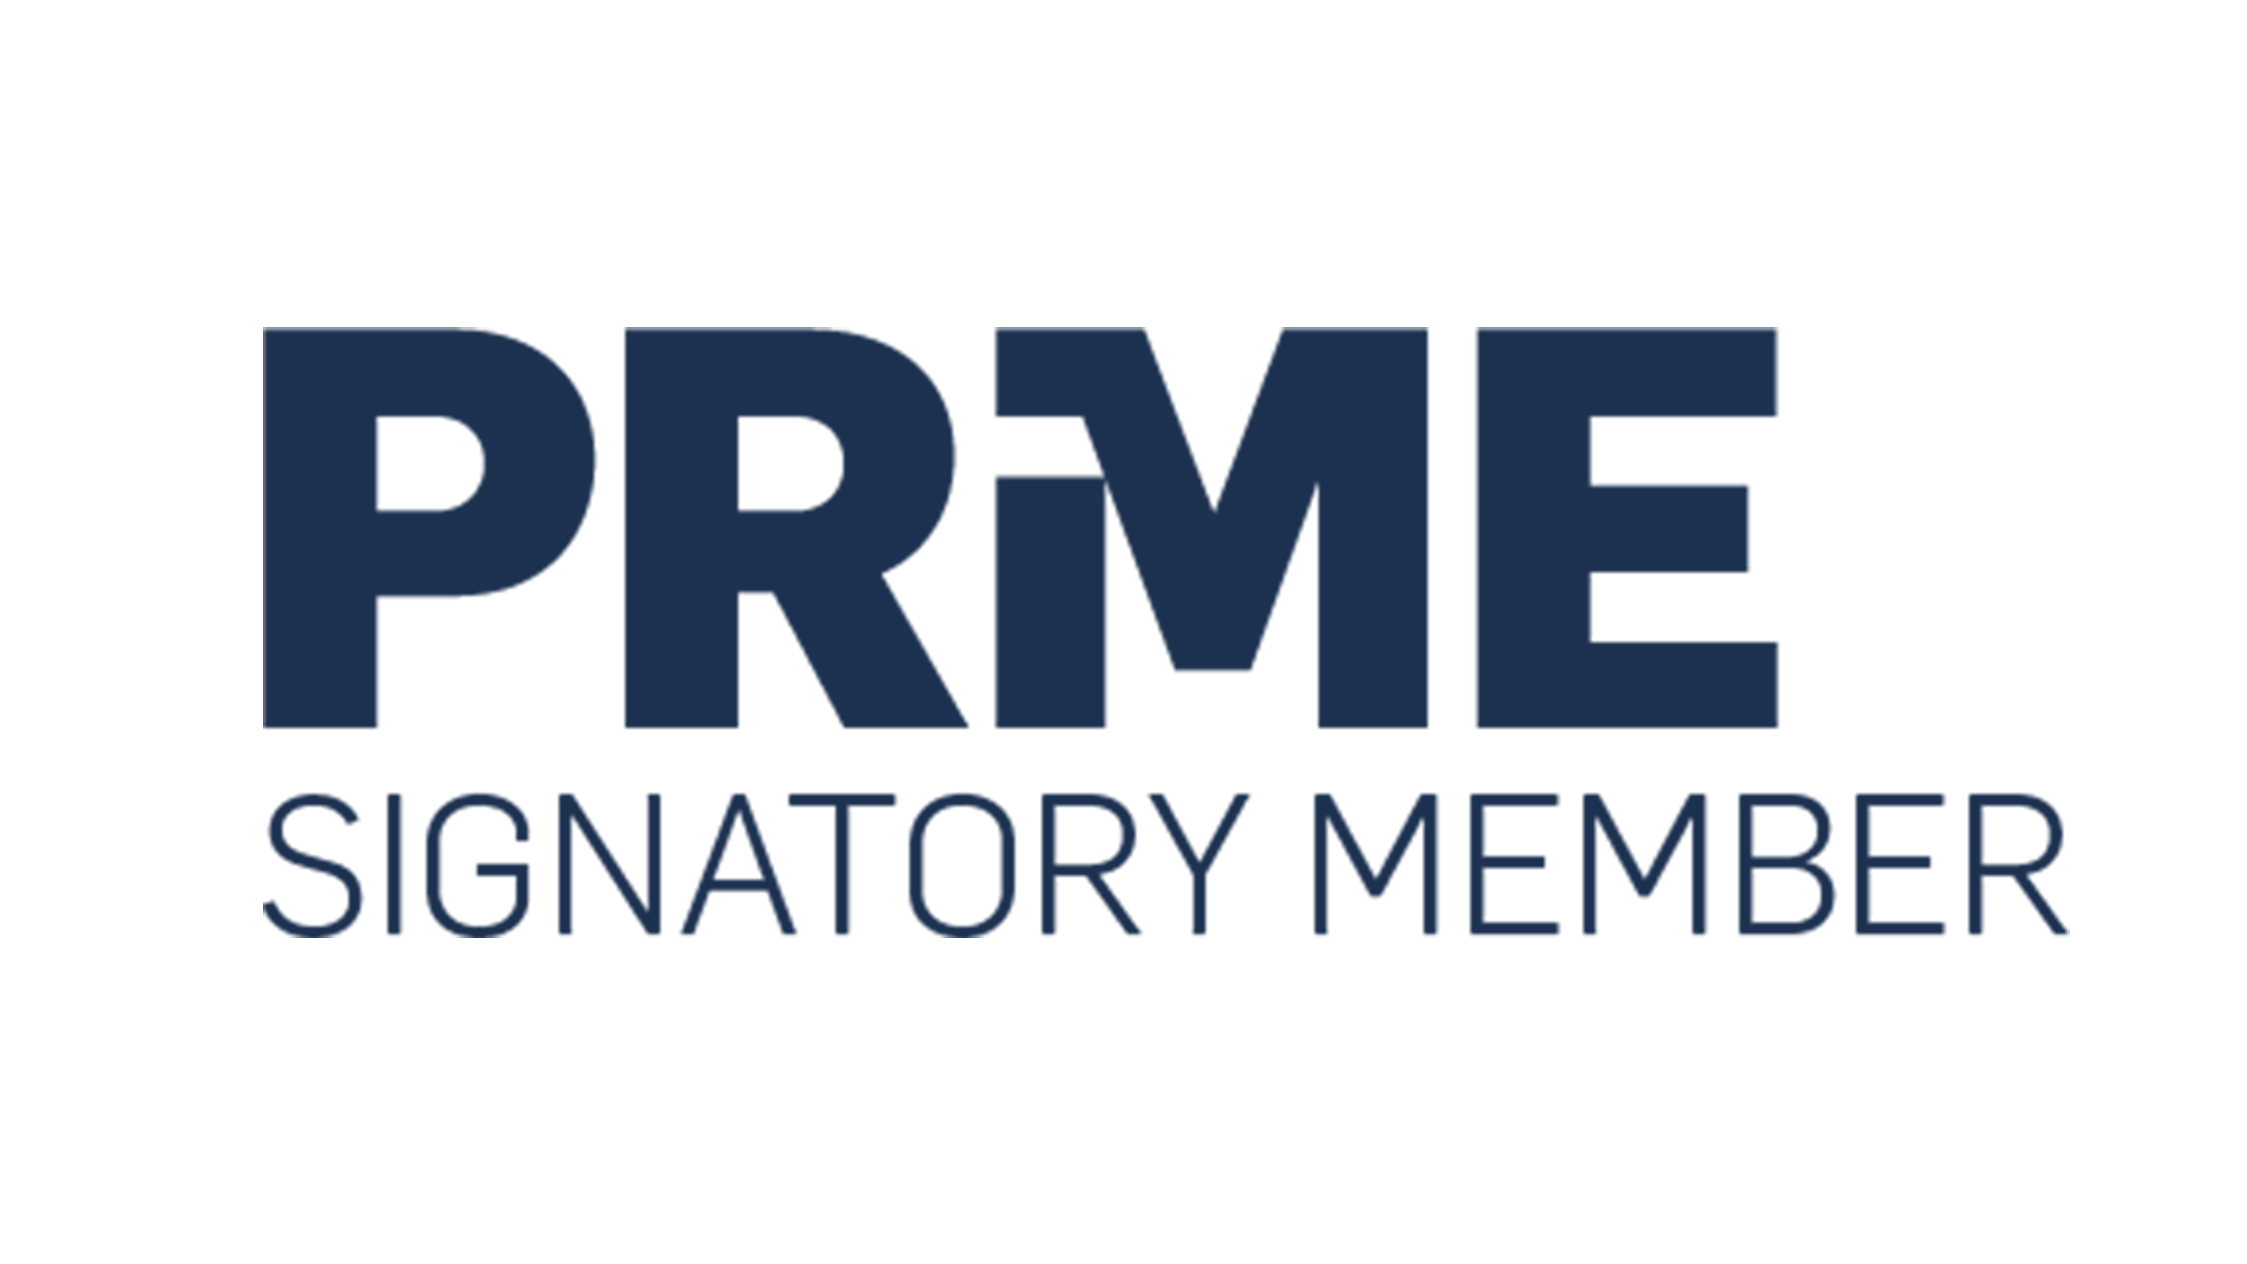 A logo of the PRME Signatory